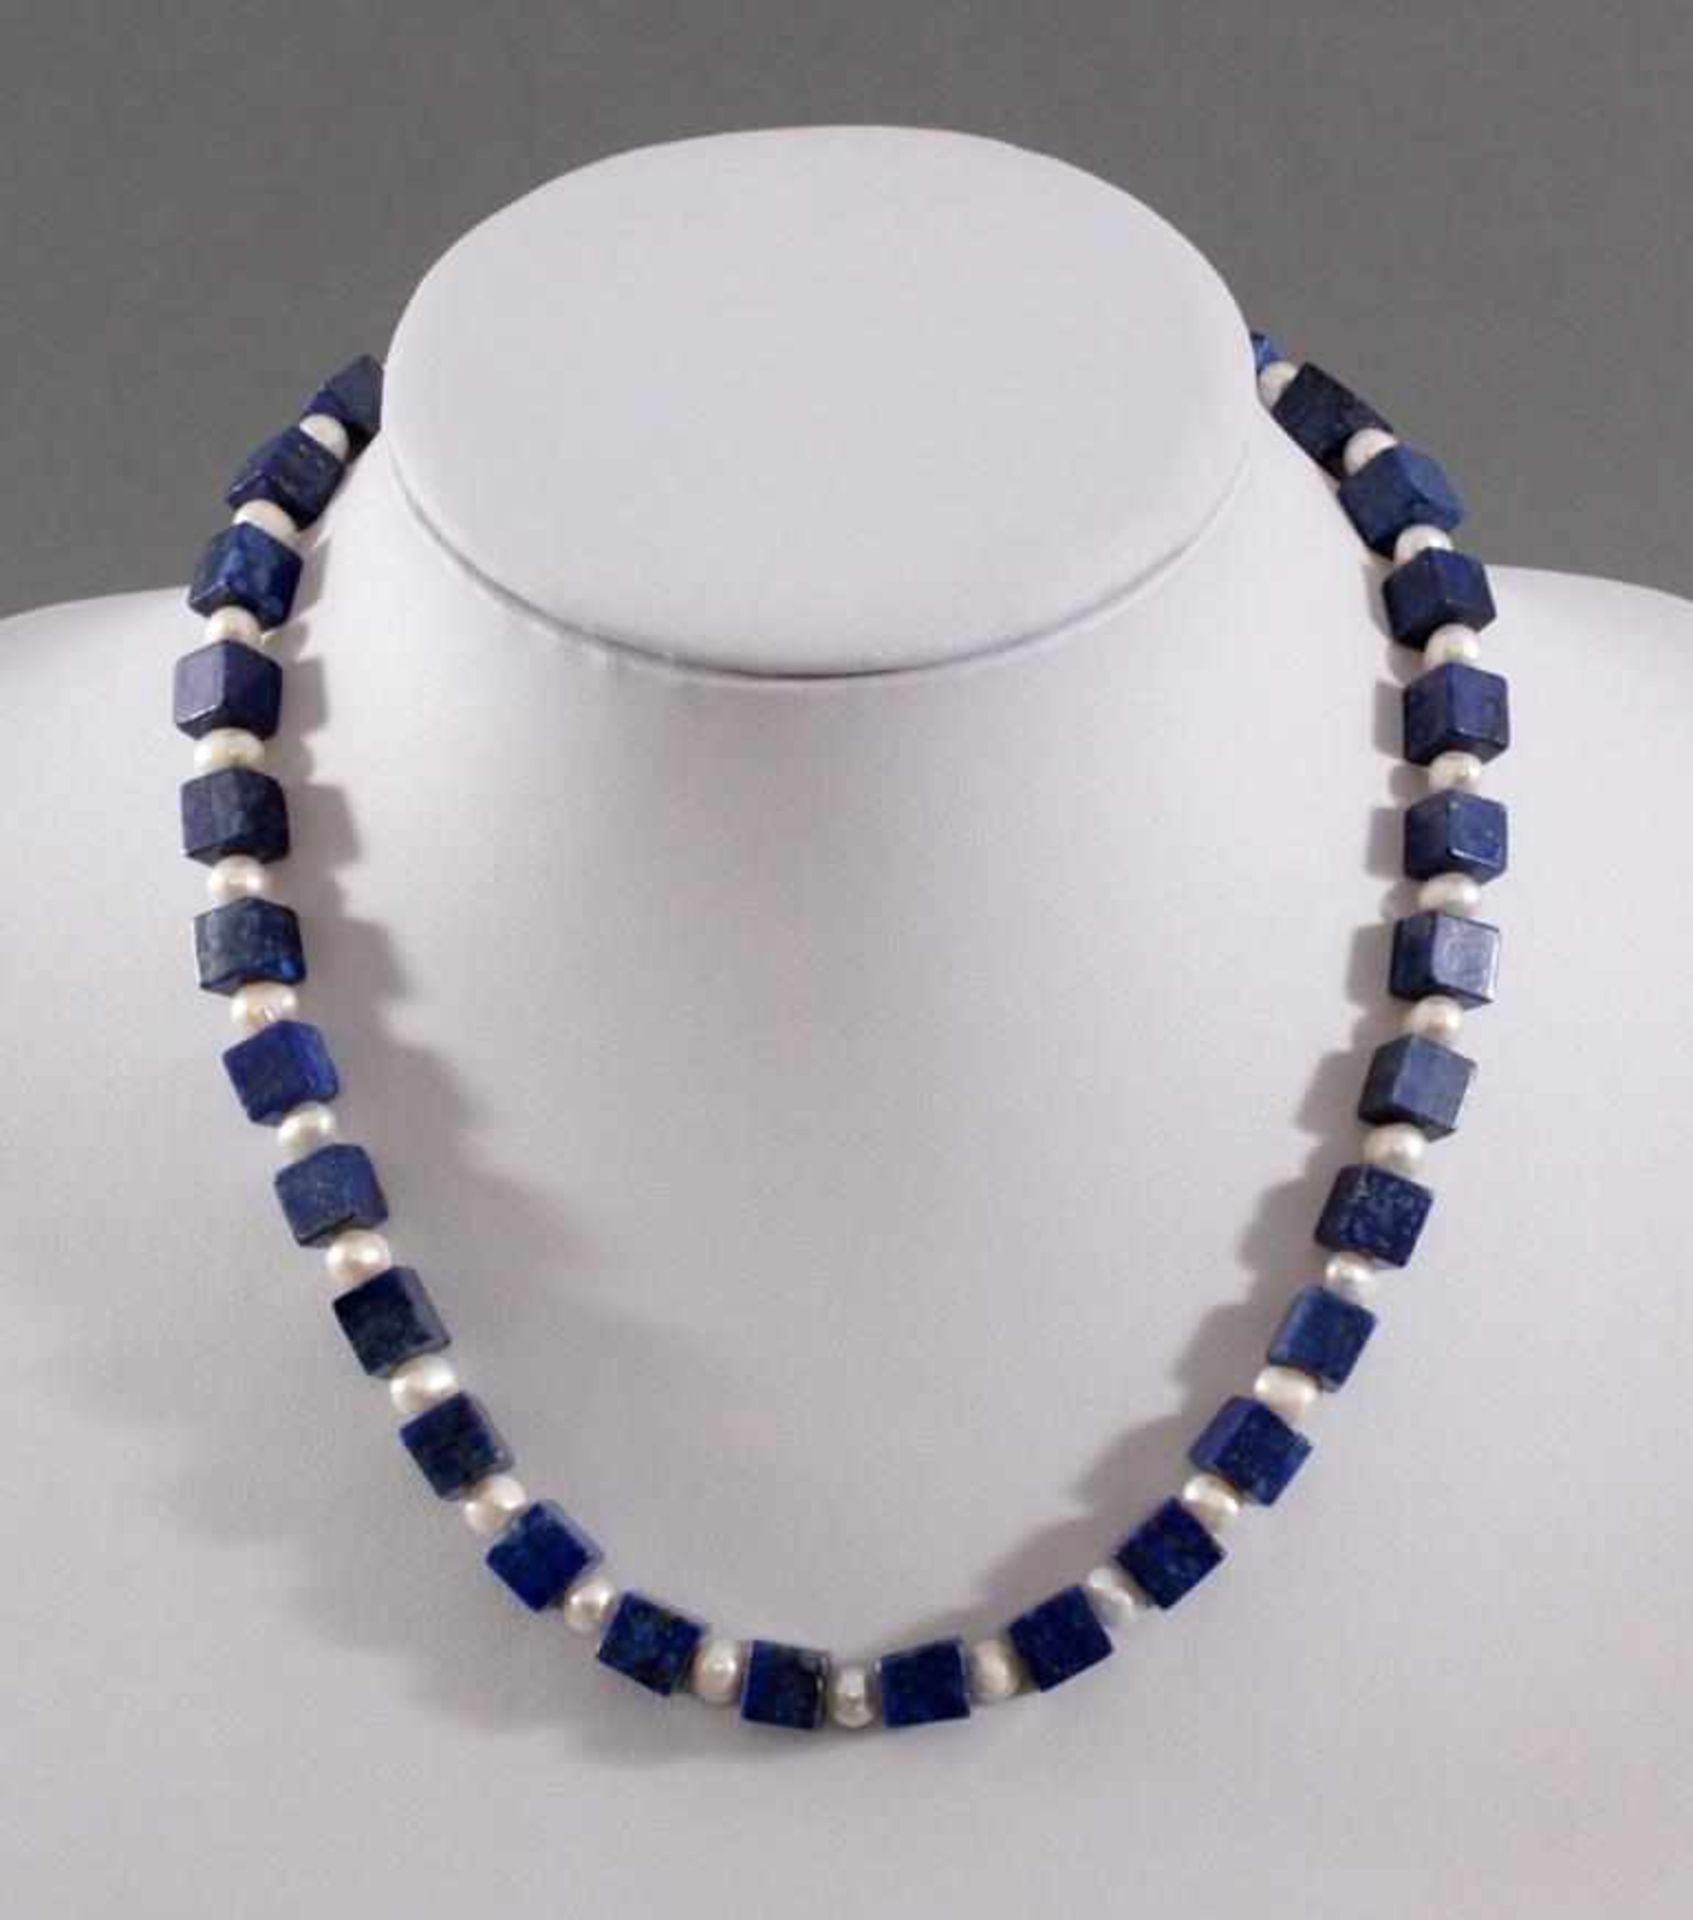 Halskette mit Lapislazuli-Steinen und Frischwasser-PerlenKarabiner-Verschluss aus Sterling Silber,